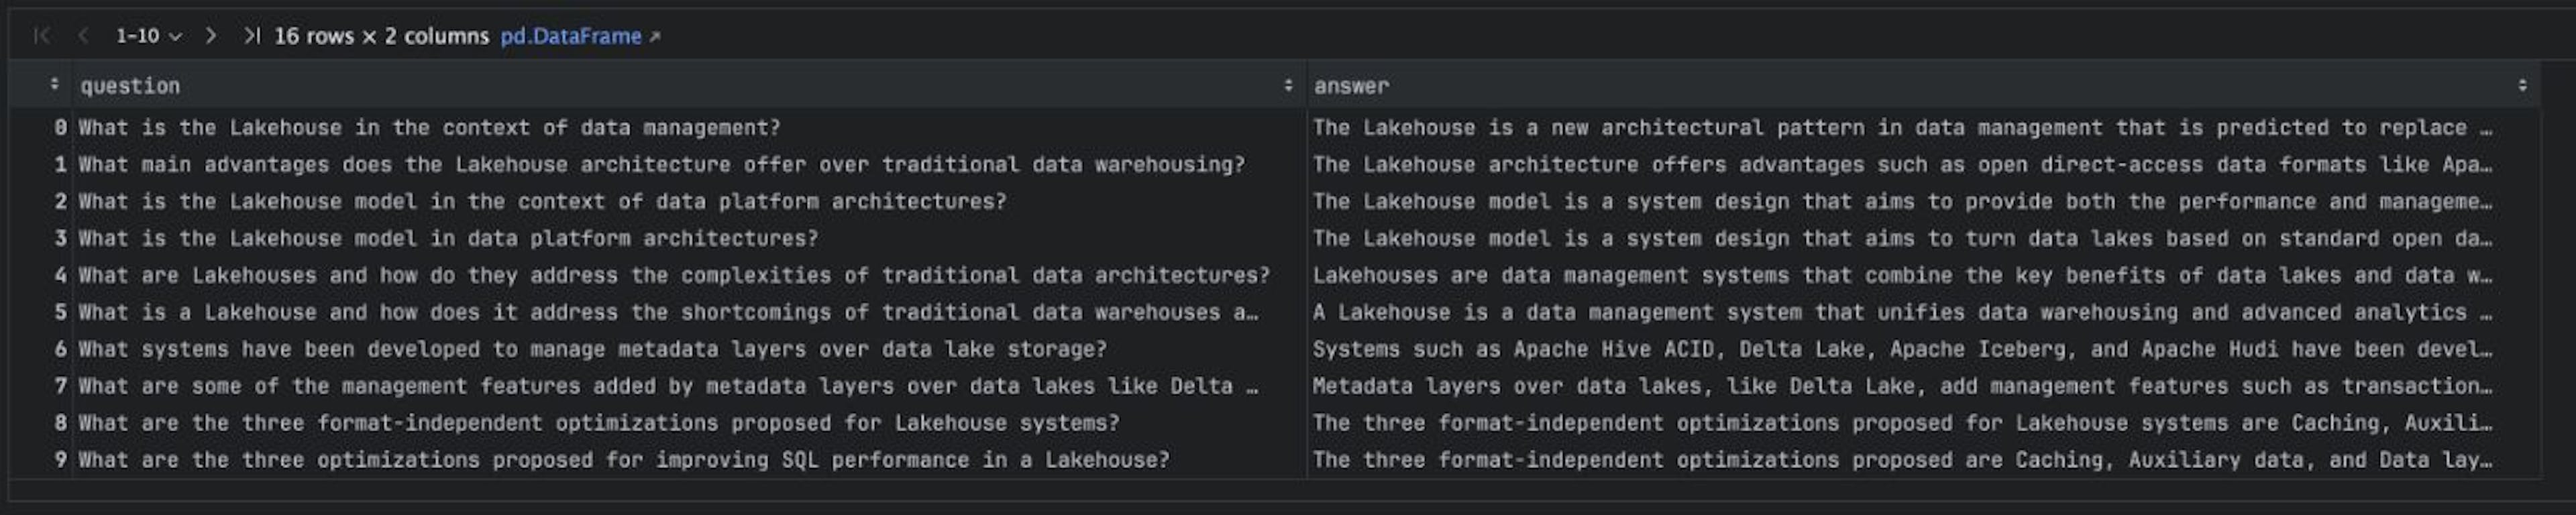 论文“Lakehouse：统一数据仓库和高级分析的新一代开放平台”的综合 QA 语料库。